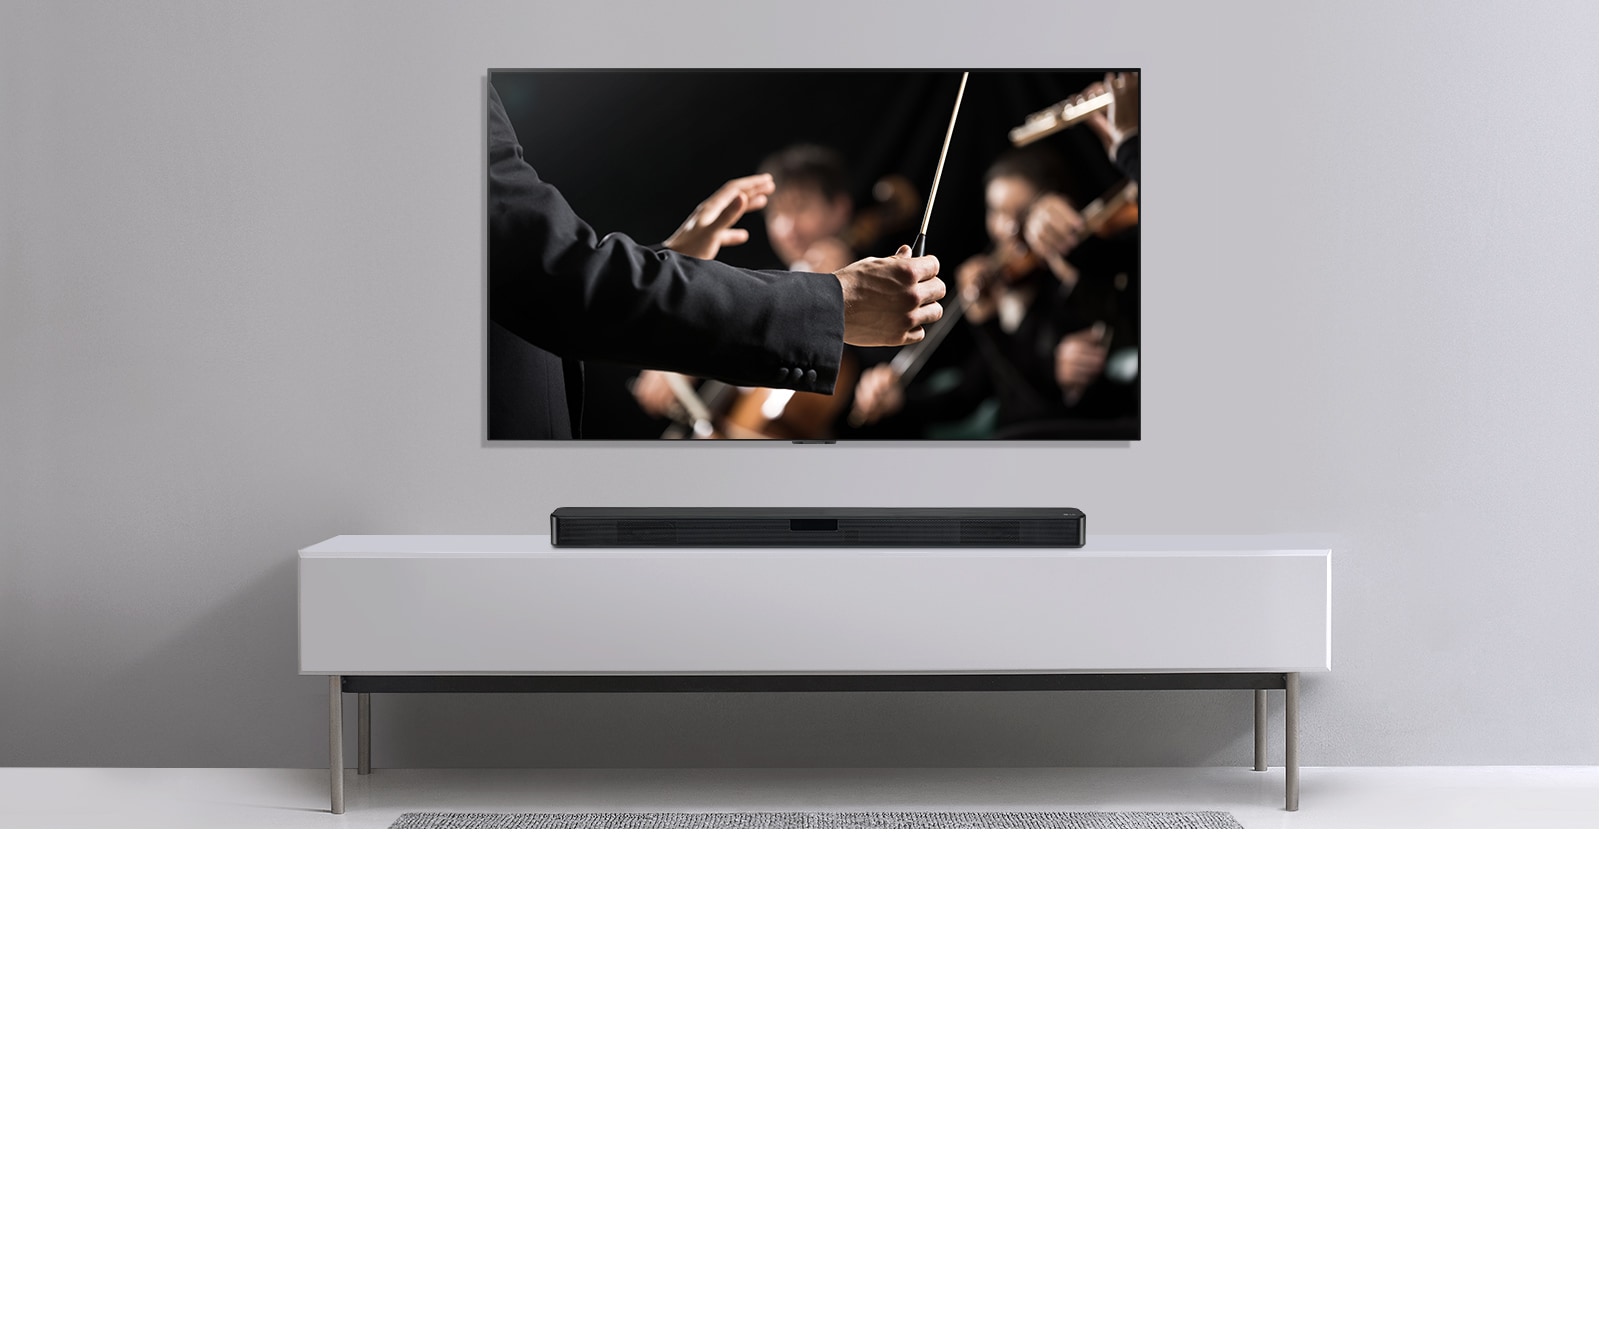 Τηλεόραση σε γκρι τοίχο και κάτω σε ένα γκτι ράφι - ένα LG Sound Bar. Στην τηλεόραση ένας μαέστρος διευθύνει μια ορχήστρα.